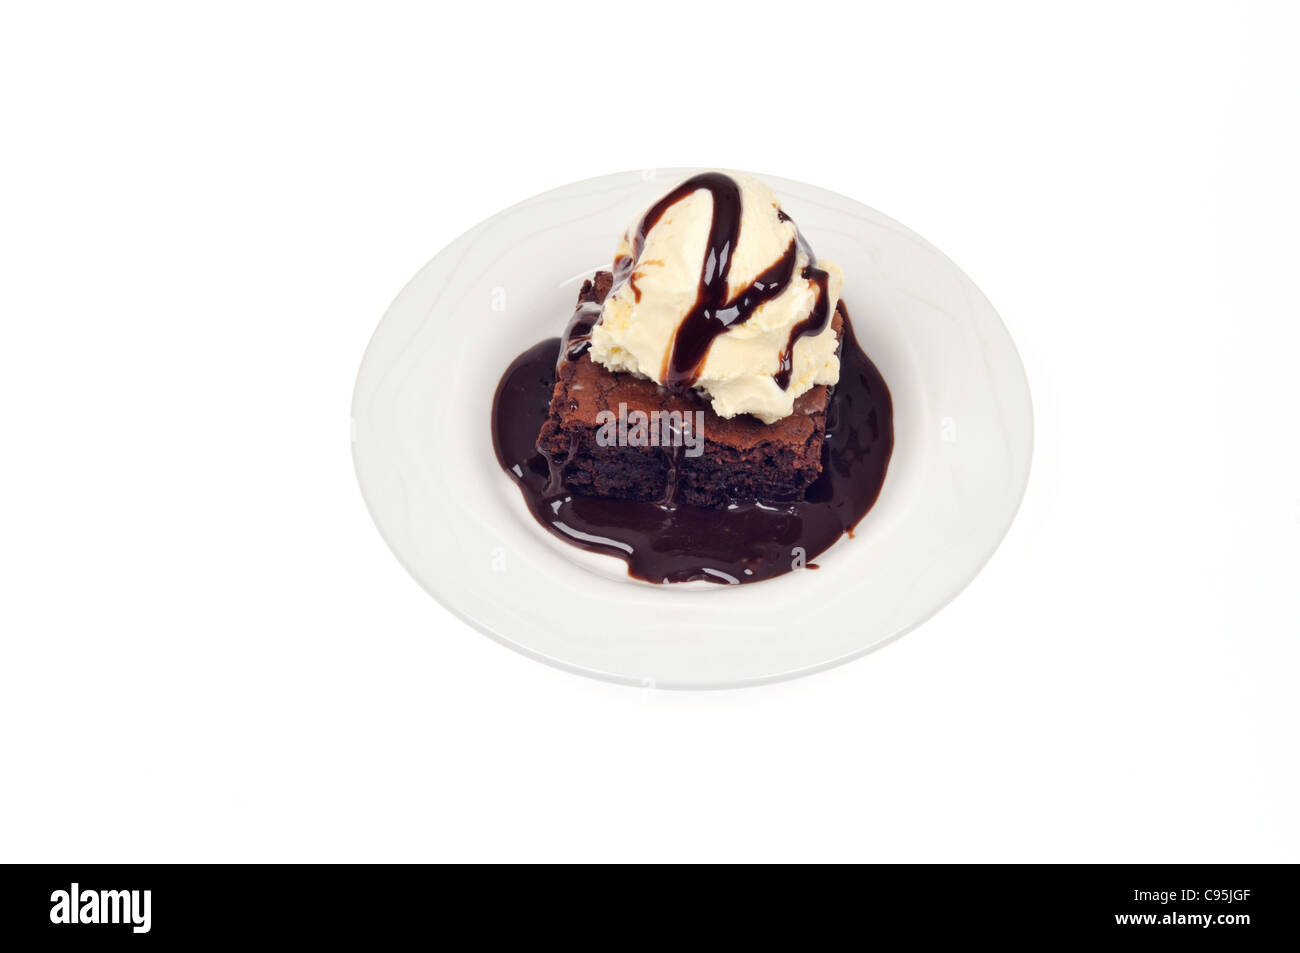 Fudge Brownie de chocolate y helado de vainilla con salsa de chocolate sobre la placa blanca sobre fondo blanco del recorte. Foto de stock